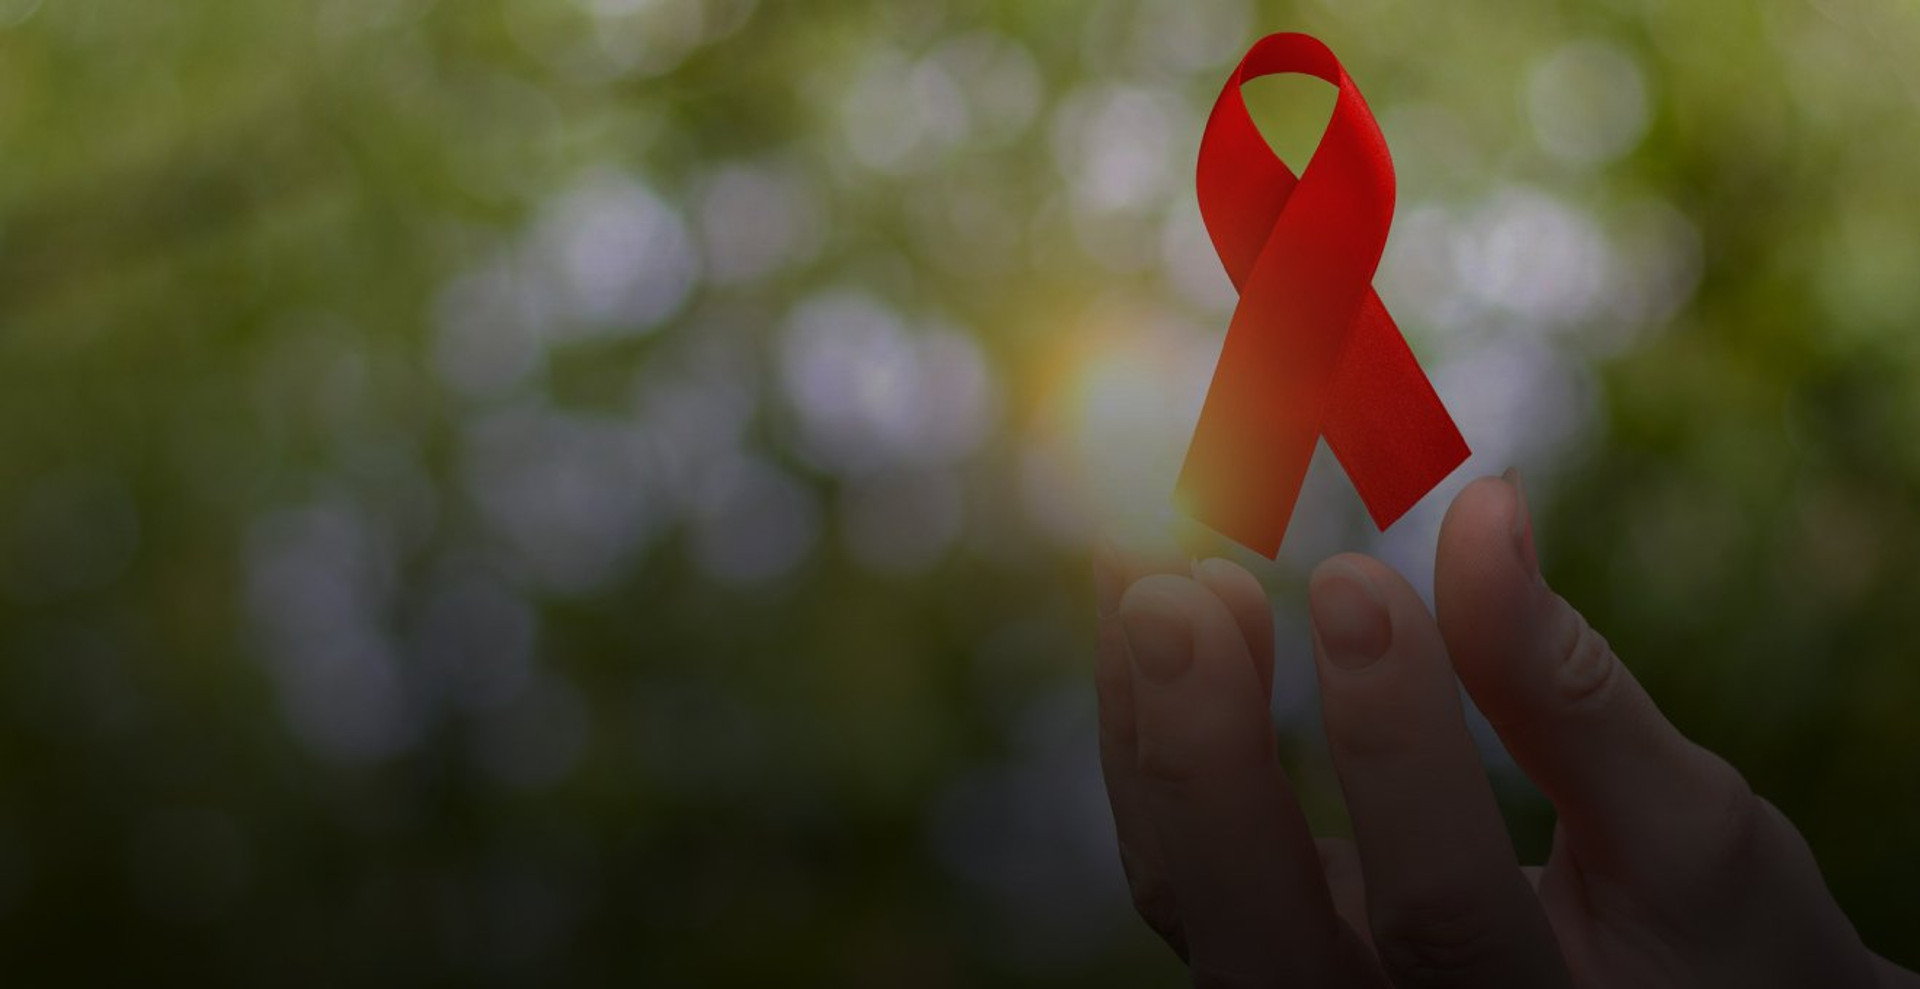 11 років без змін: як два законопроєкти можуть вирішити низку проблем людей з ВІЛ/СНІД